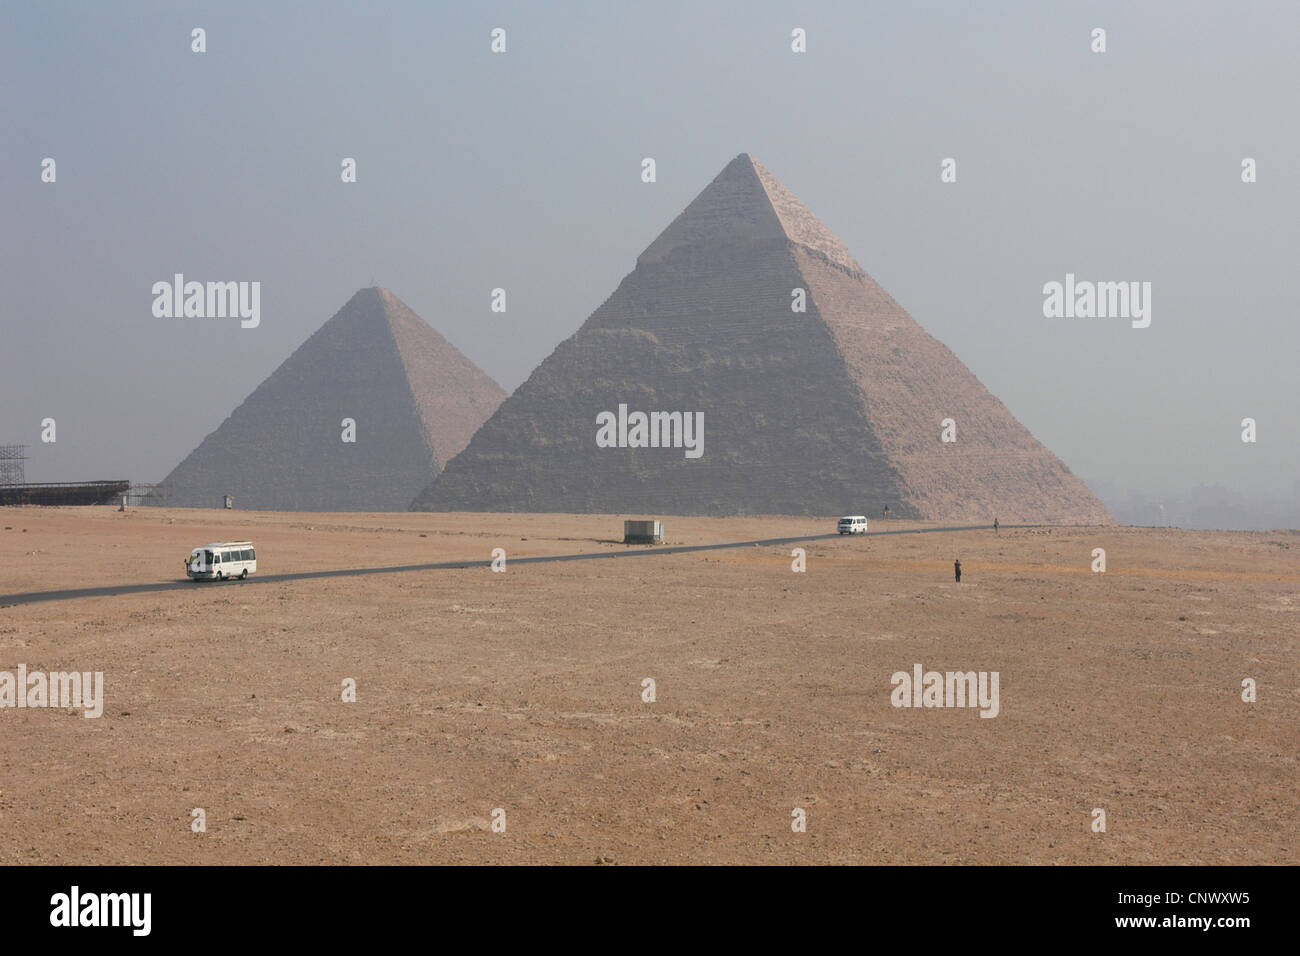 La grande pyramide de Khéops (L) et la Pyramide de Chefren (R) dans la région de Giza, Egypte. Banque D'Images